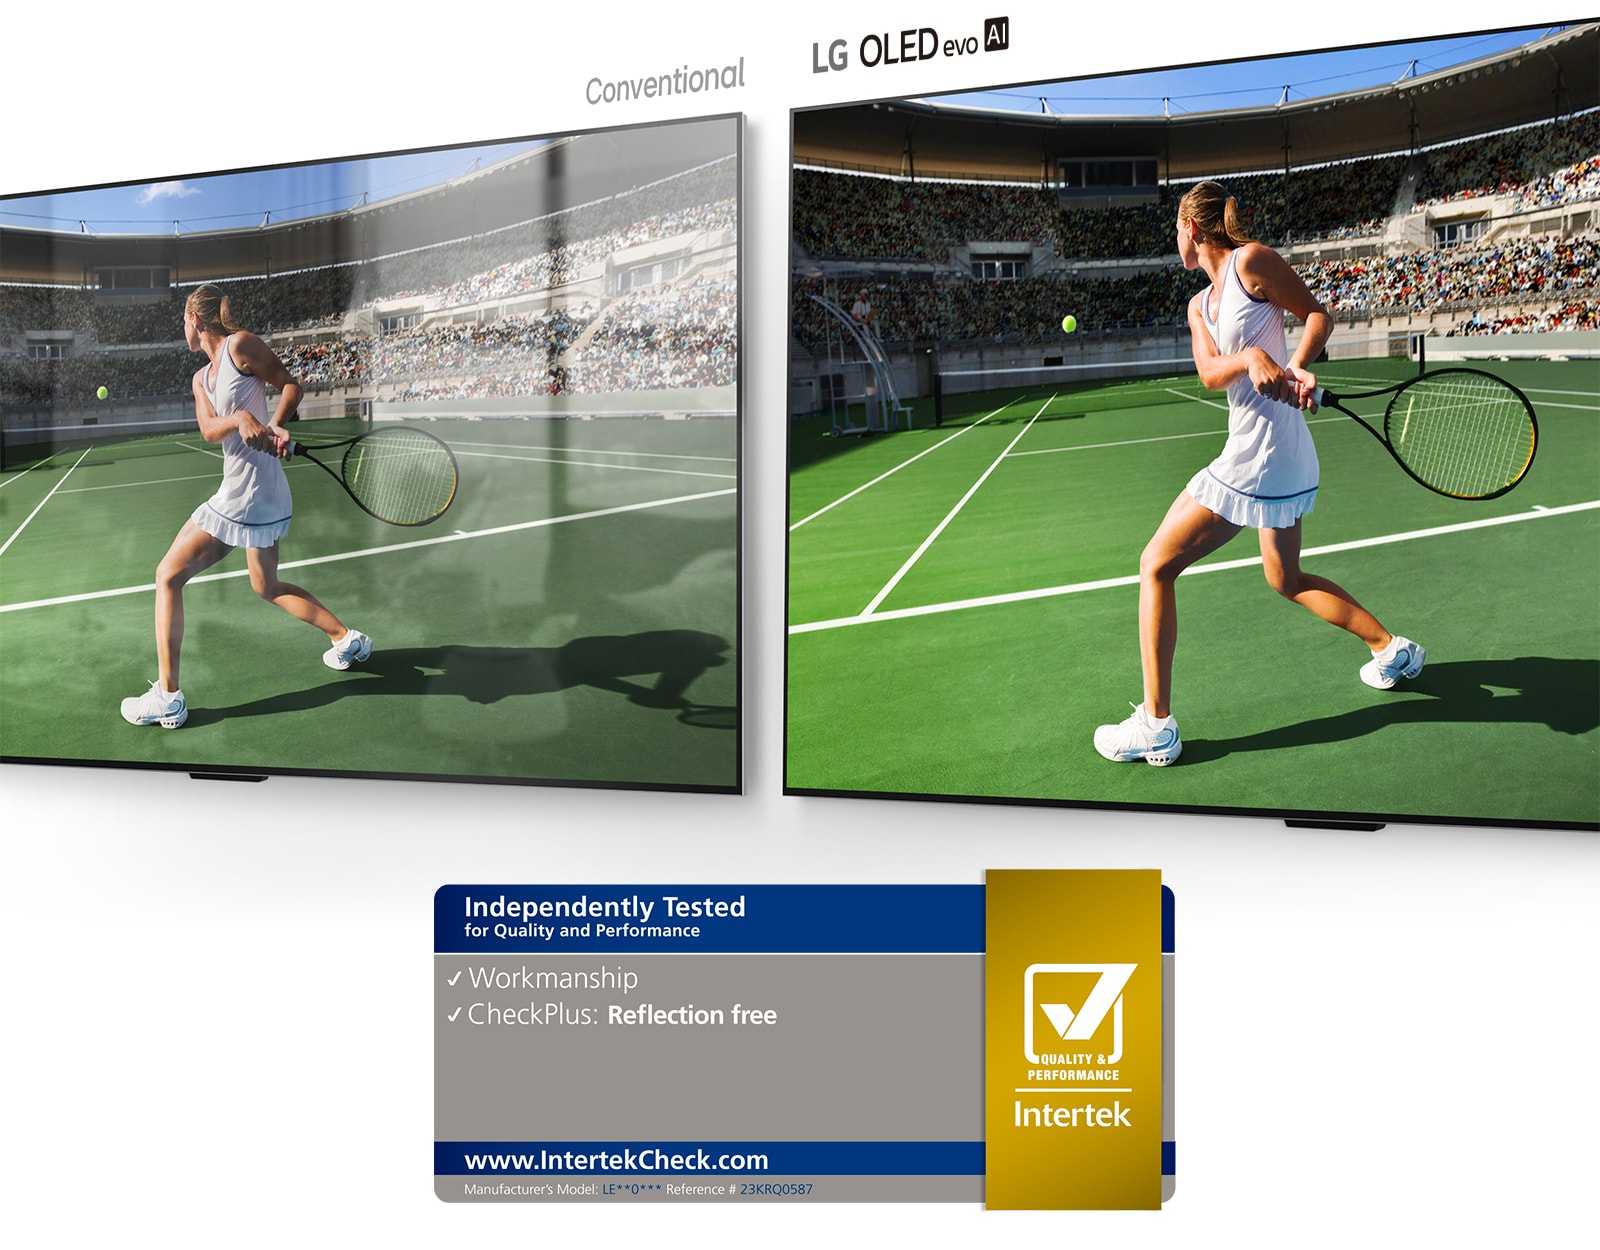 在左邊，傳統電視顯示體育場內的網球選手，螢幕上有房間的反射。在右邊，LG OLED evo M4 顯示著同一個在體育場上的網球選手的圖像，沒有房間的反射，而且圖像看起來更加明亮和色彩豐富。